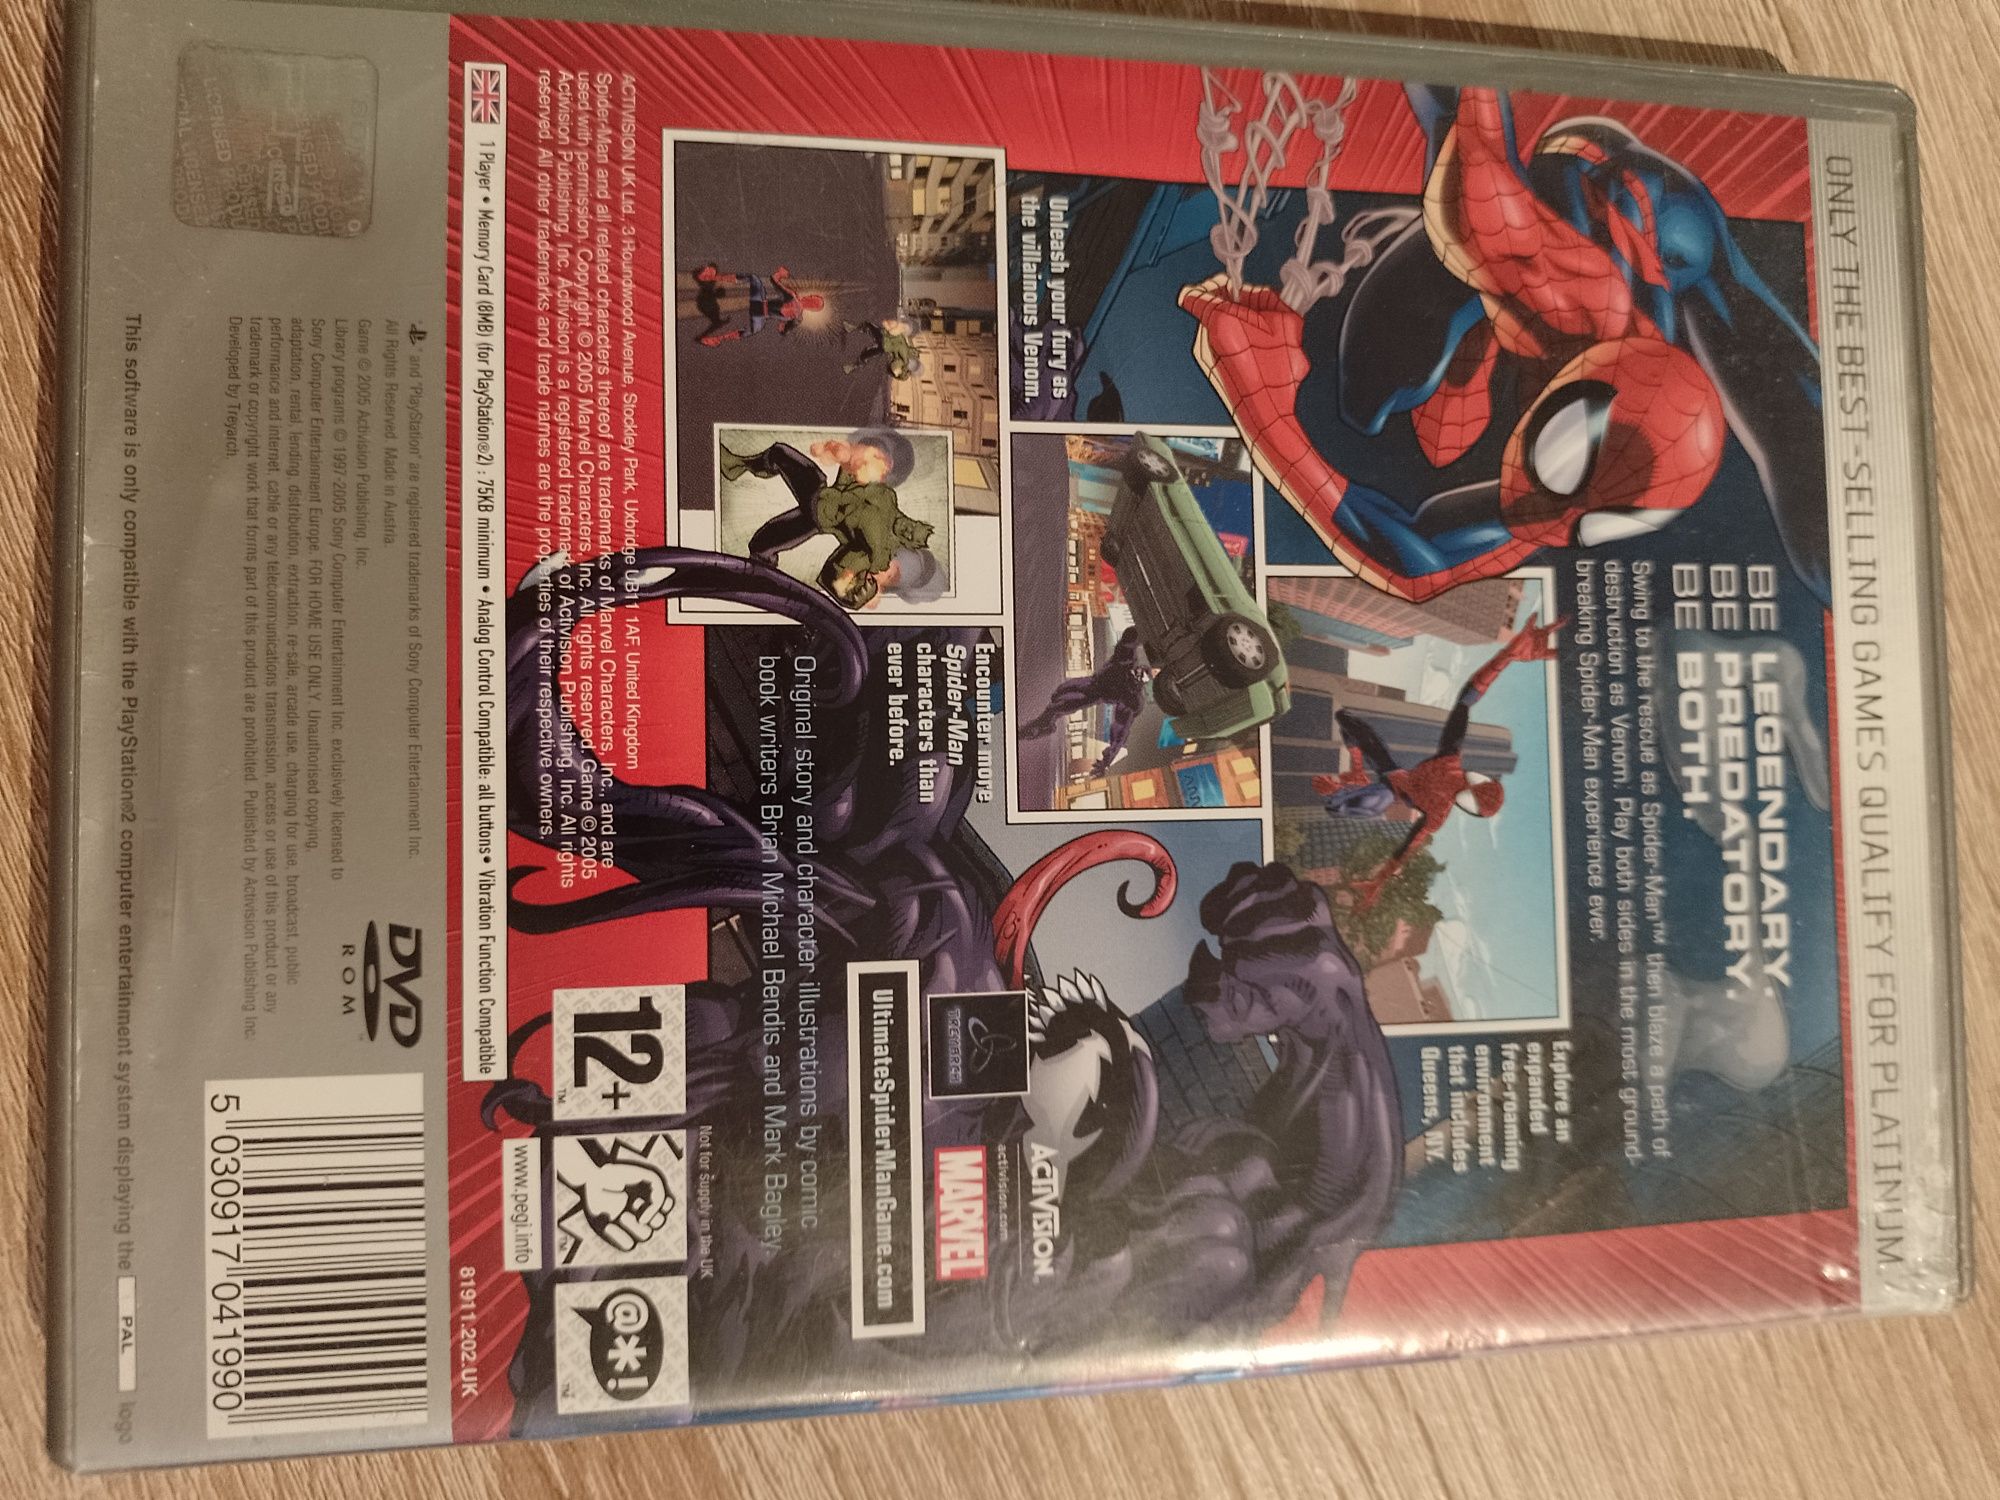 Gra Spiderman na PlayStation 2